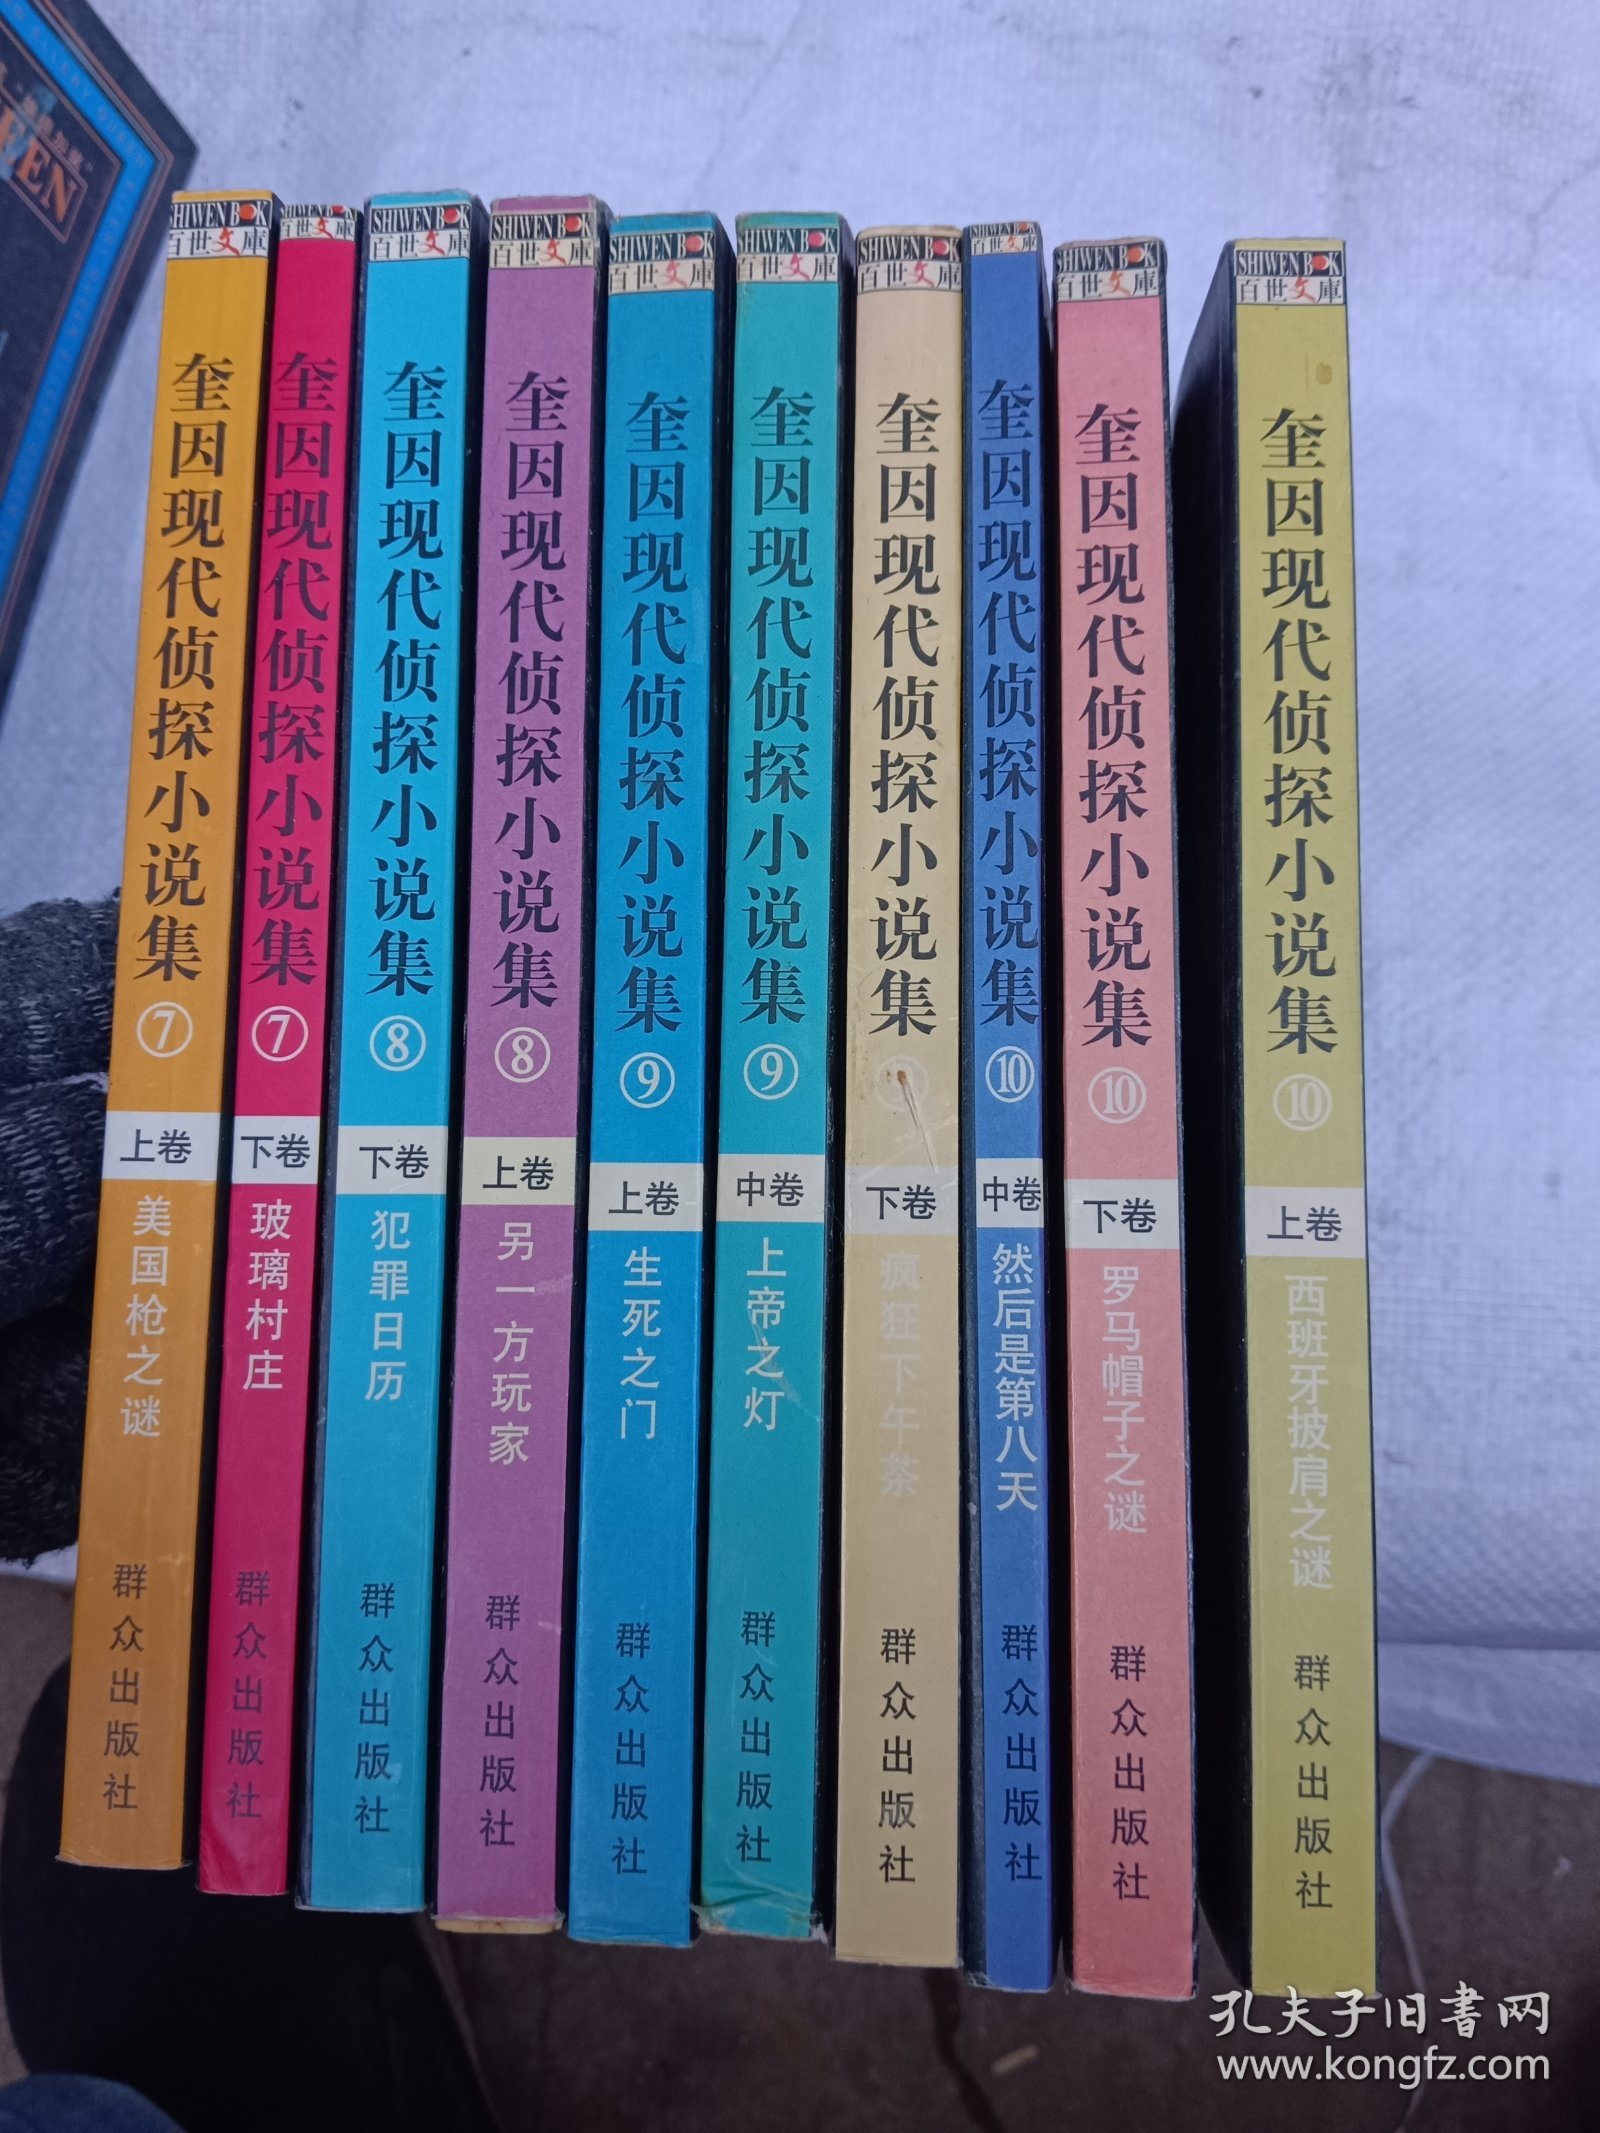 奎因现代侦探小说集（7上，下）（8上，下）（9上，中，下）（10上，中，下）共10册合售